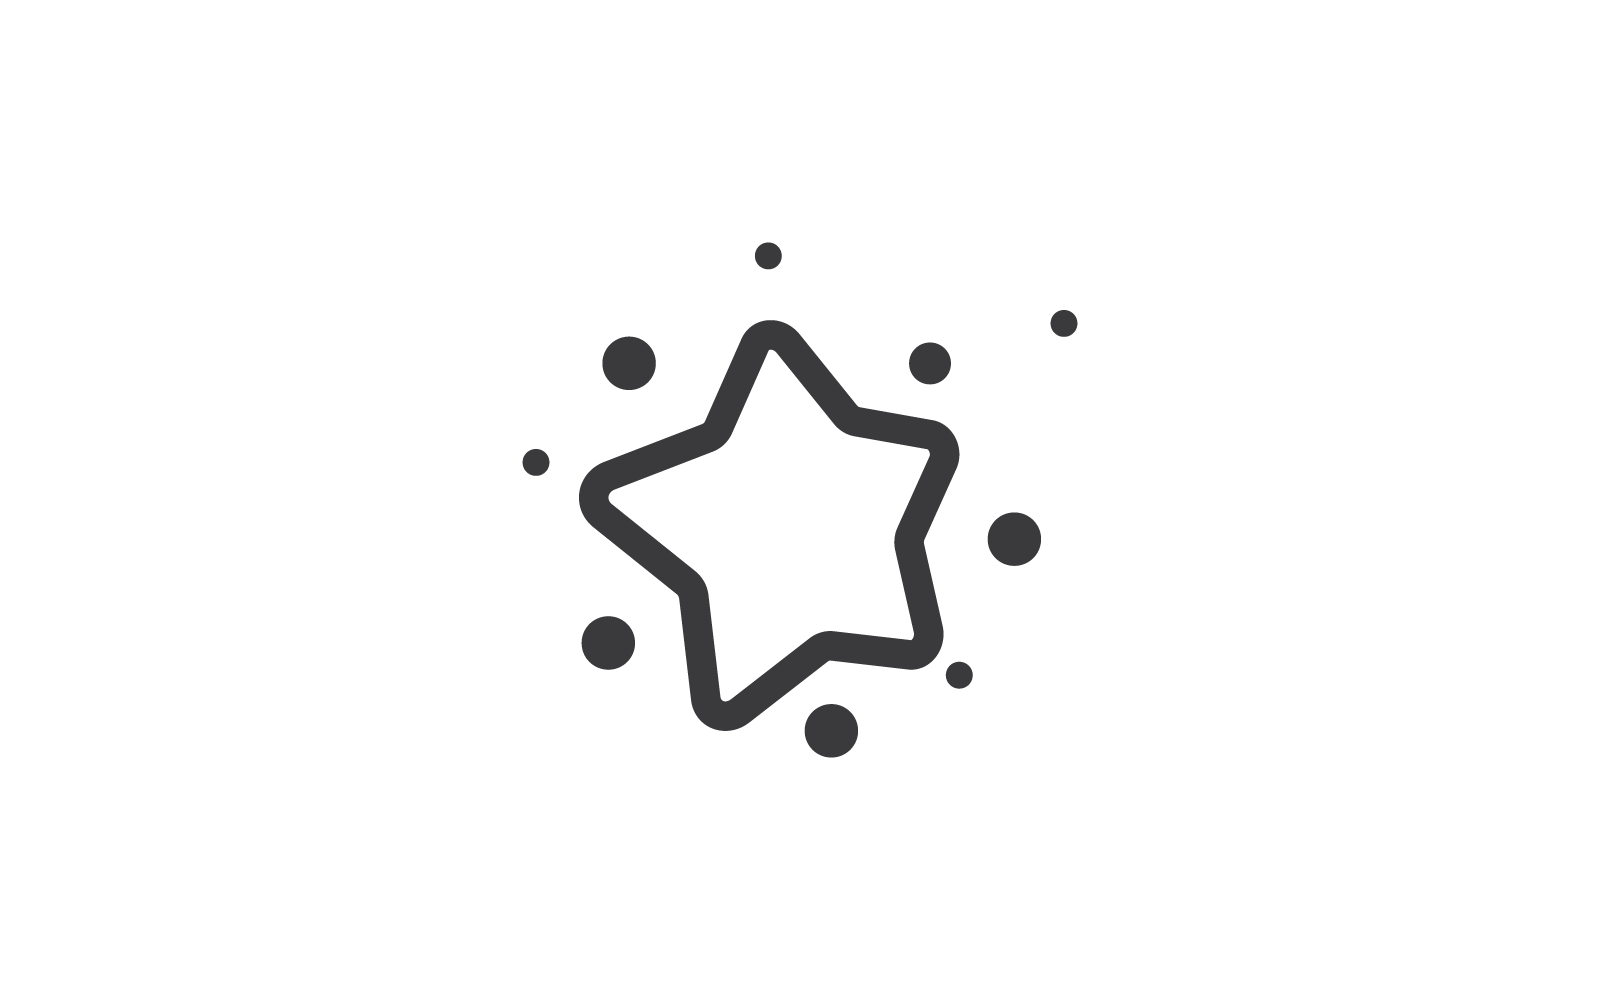 Dreams star logo vector flat design illustration